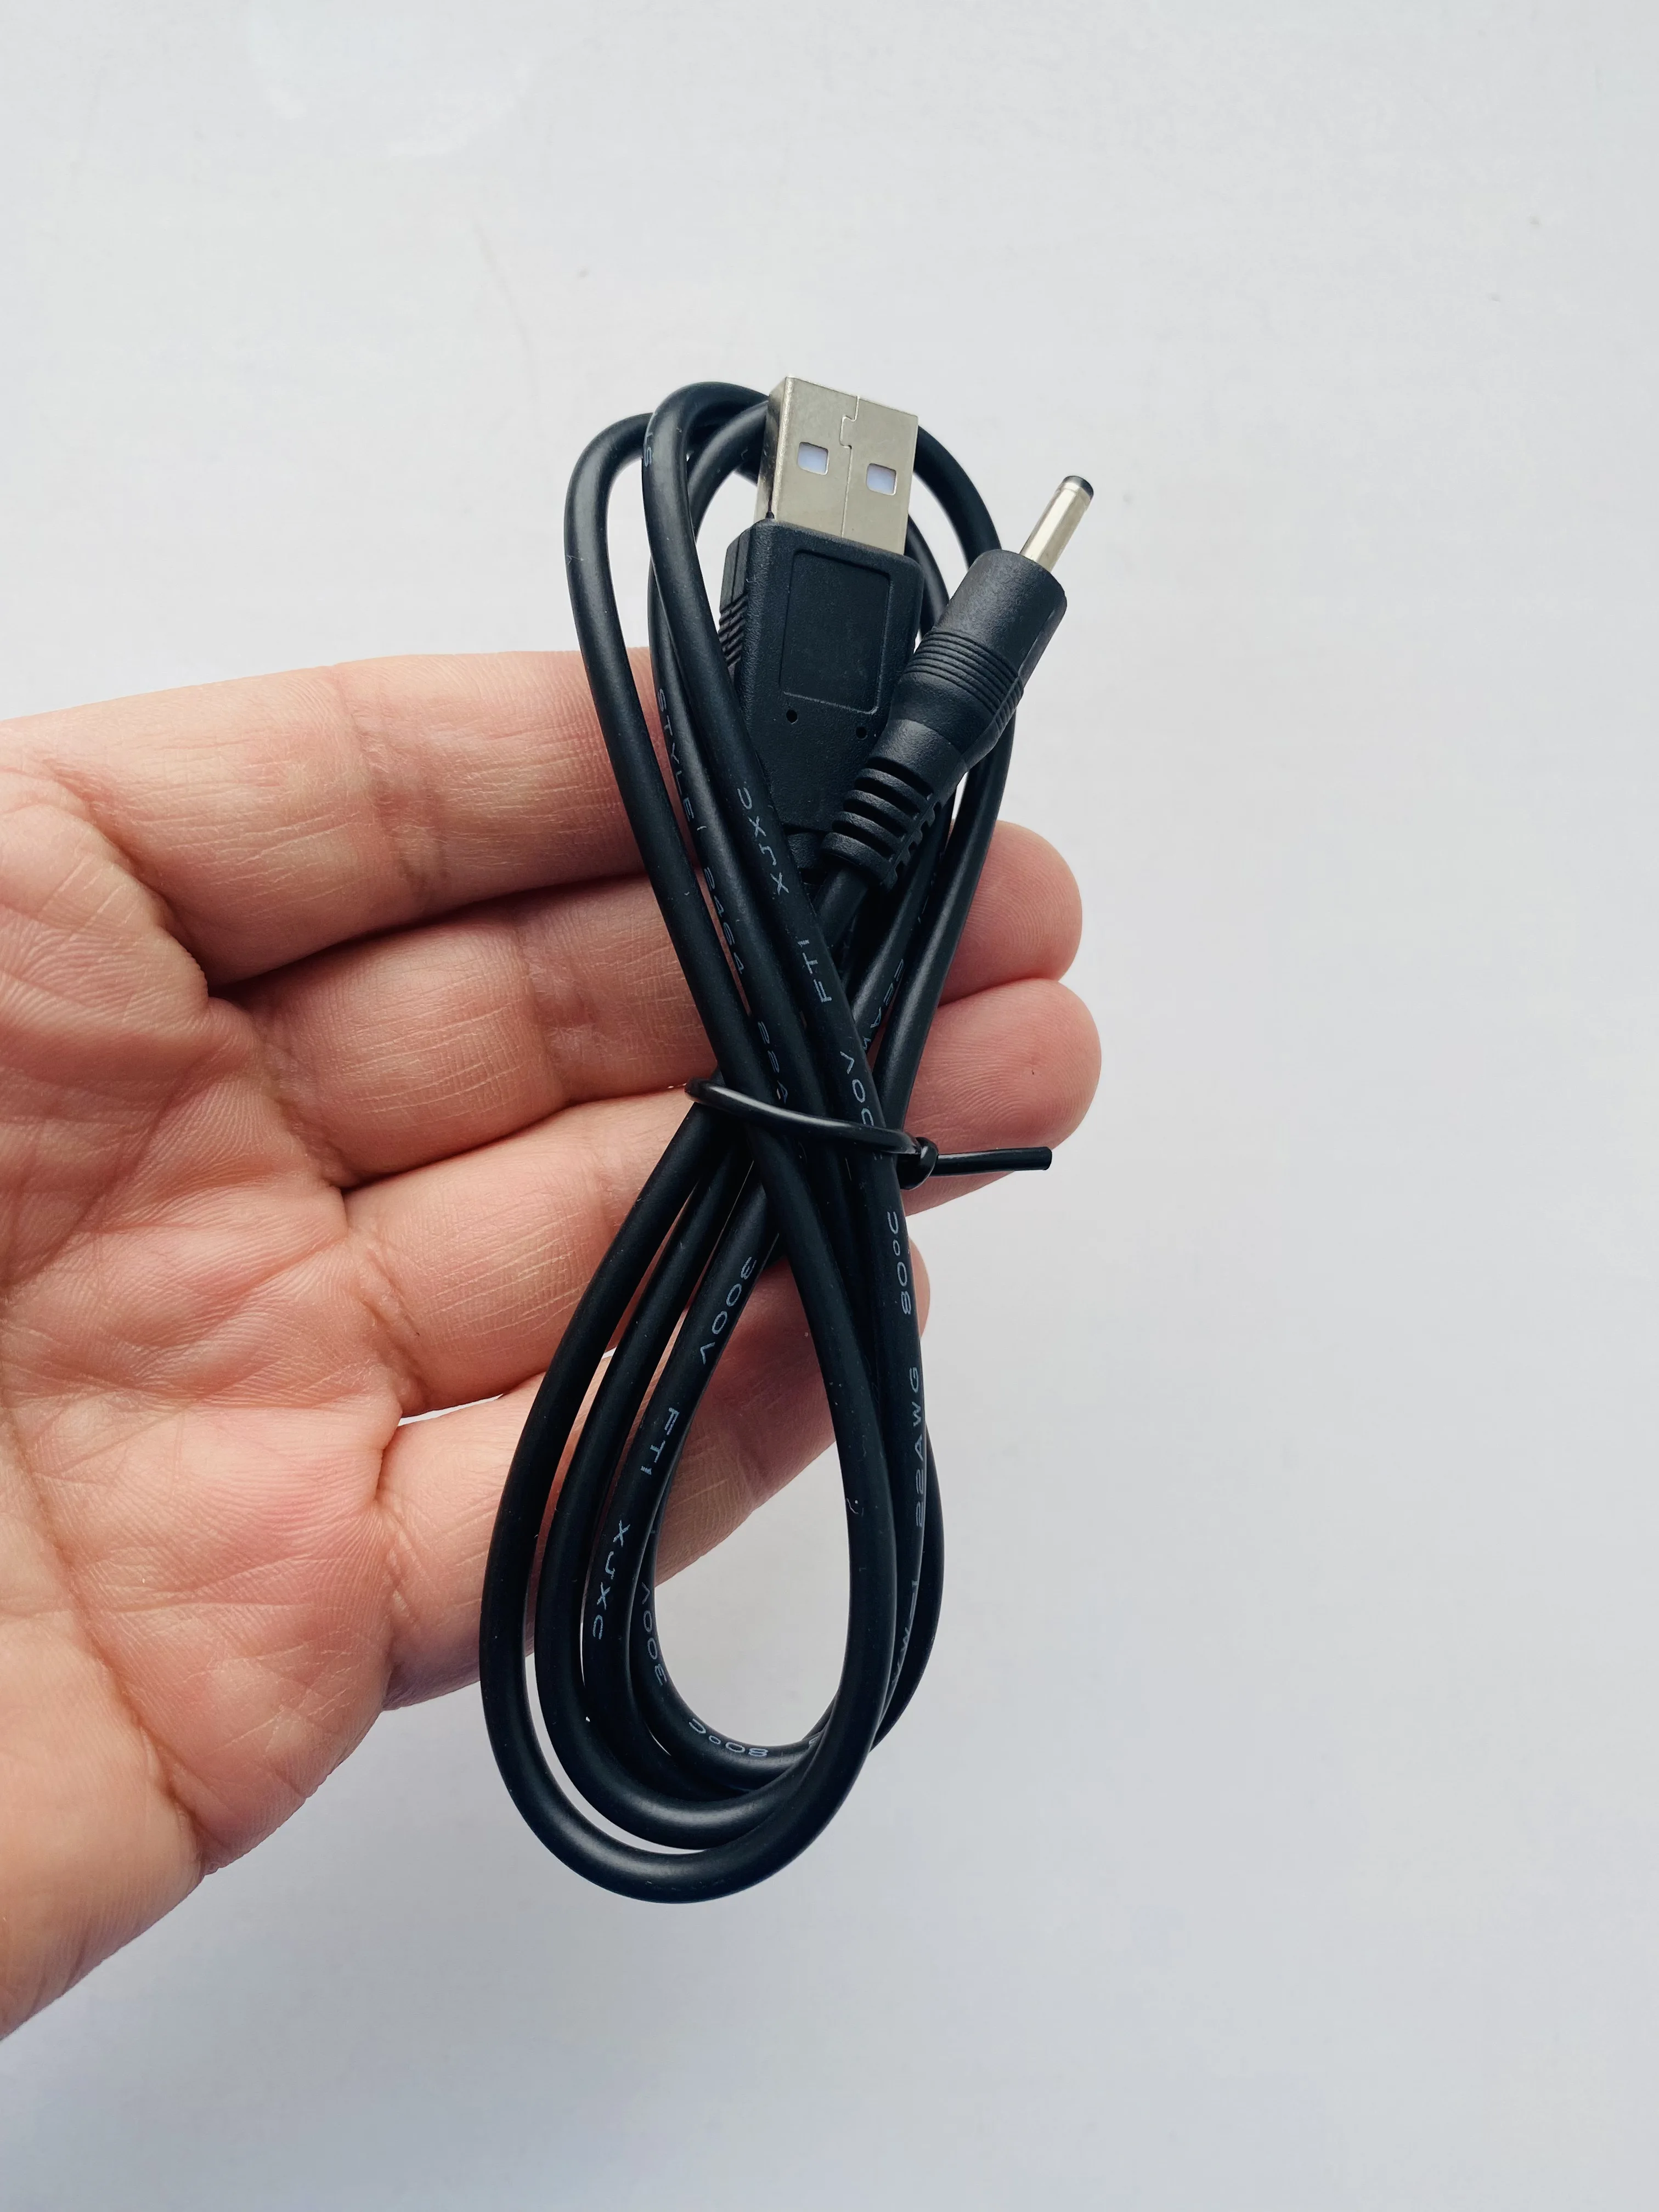 Кабель USB для зарядки спутникового телефона Iridium 9555 |